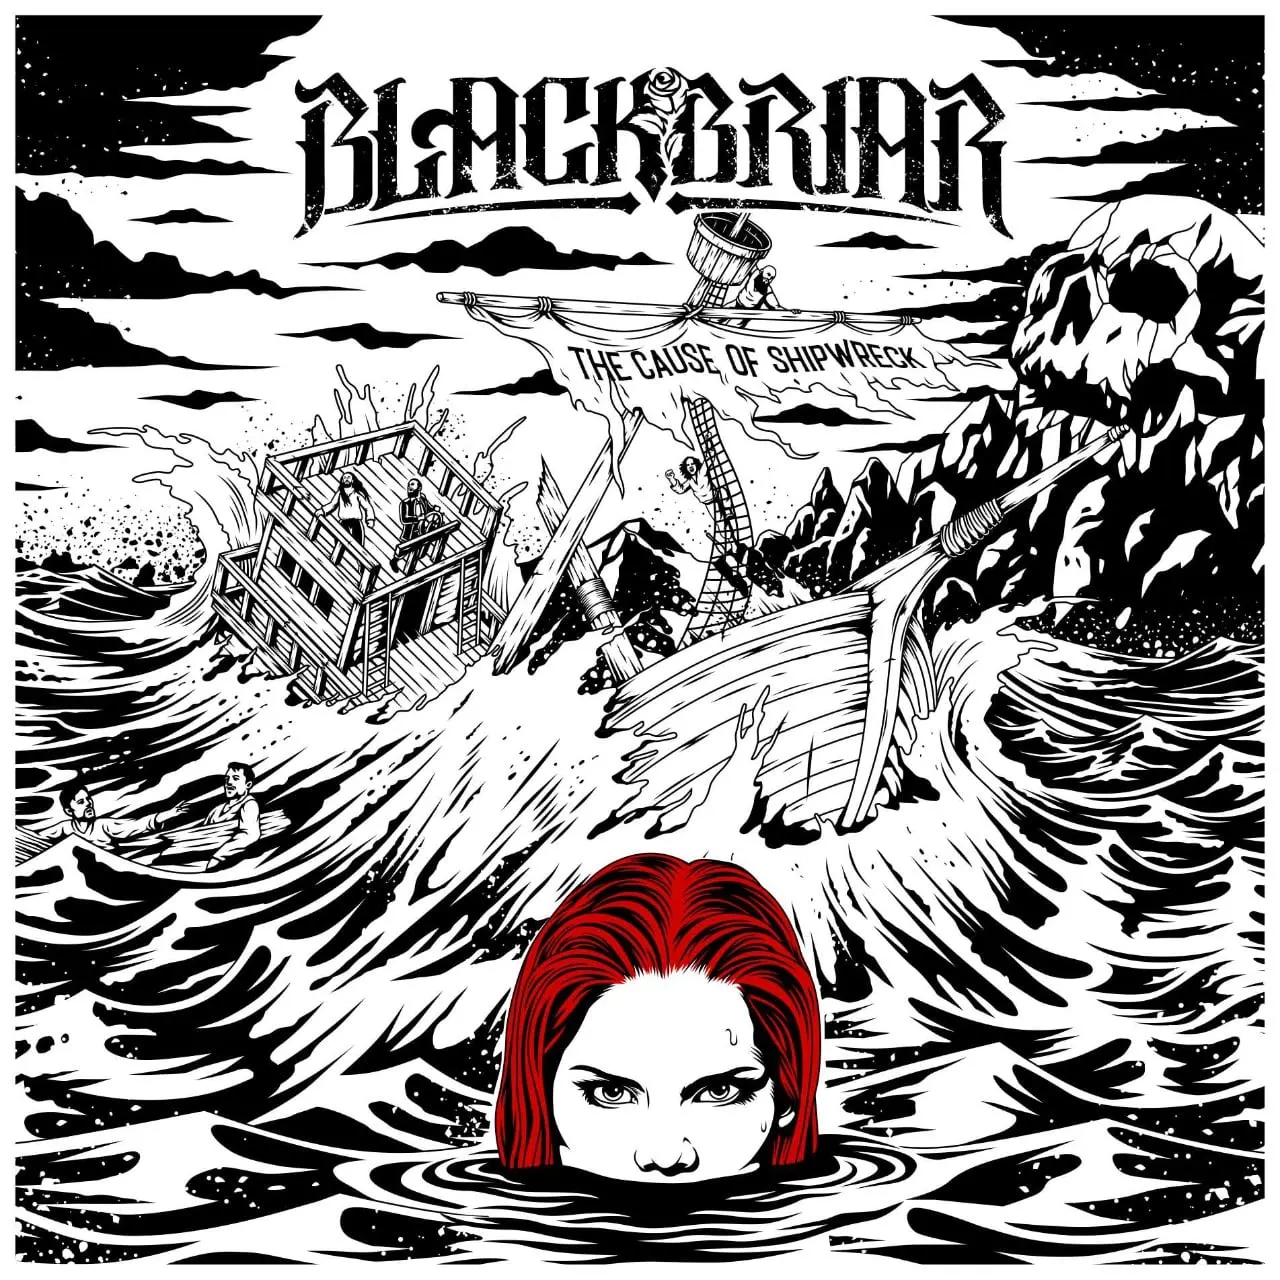 Blackbriar — Walking Over My Grave cover artwork